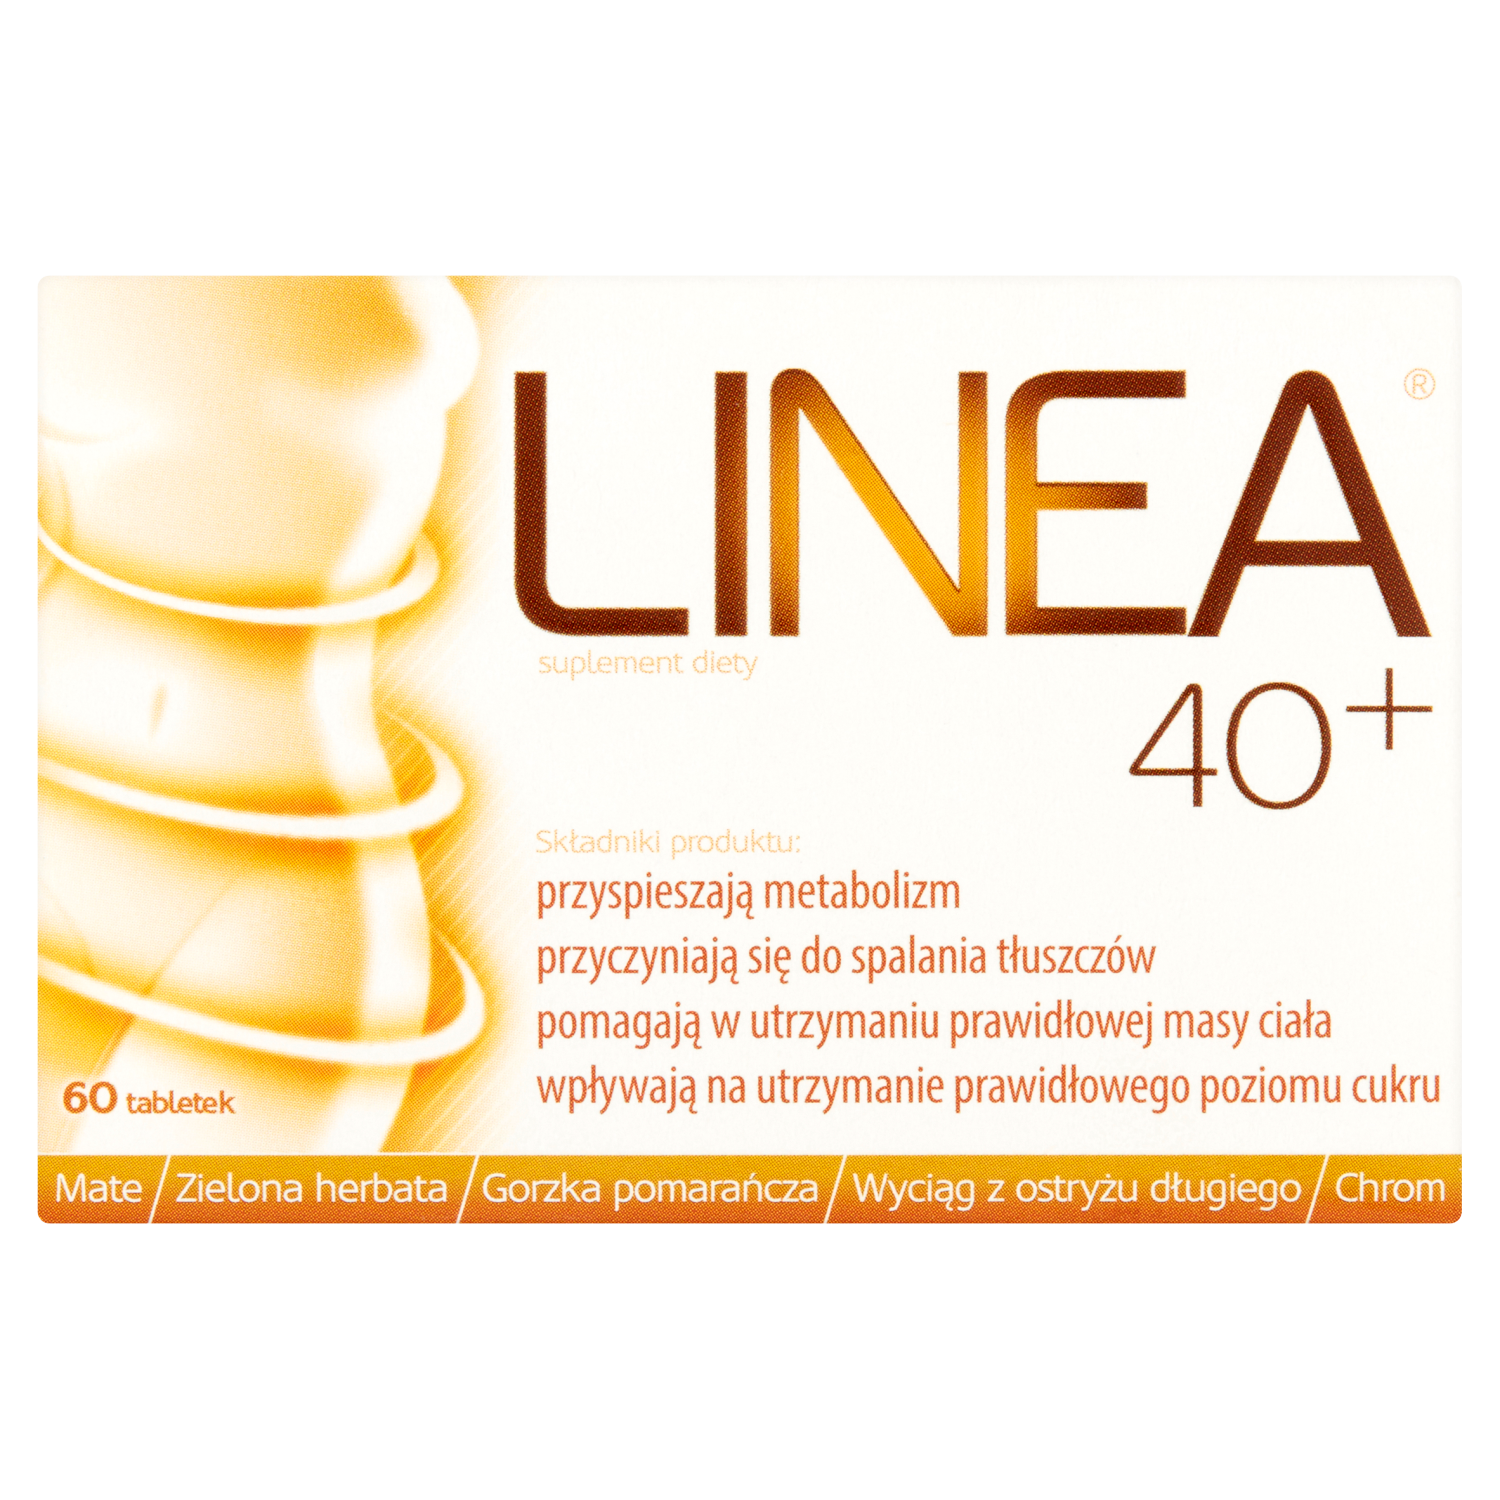 vita miner prenatal биологически активная добавка 60 таблеток 1 упаковка Linea 40+ биологически активная добавка, 60 таблеток/1 упаковка